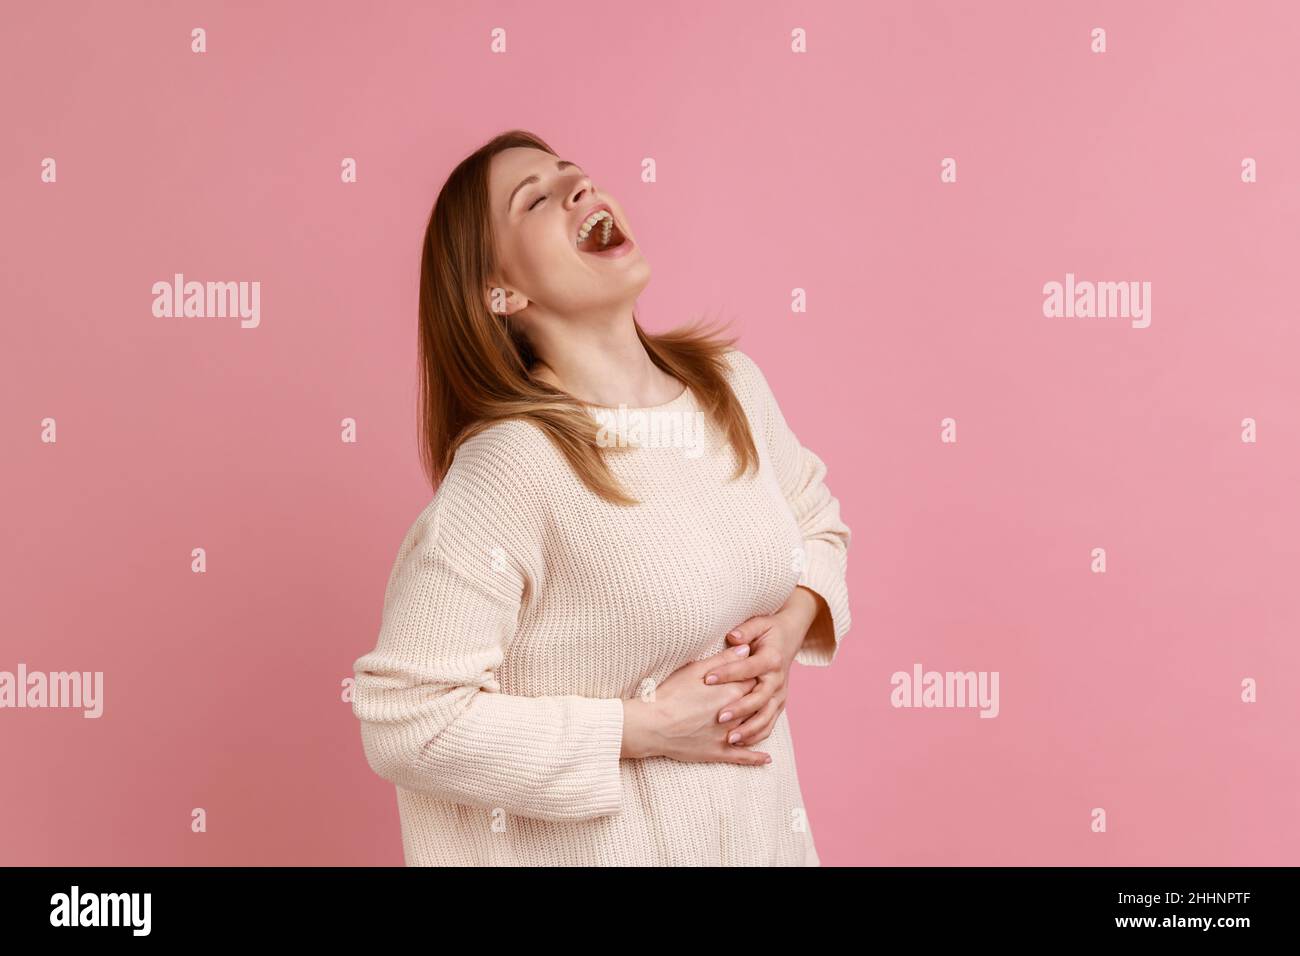 Retrato de una mujer rubia feliz sosteniendo el vientre, riendo en voz alta, burlándose de la risa histérica, burlándose de un amigo, luciendo un suéter blanco. Estudio en interior grabado aislado sobre fondo rosa. Foto de stock